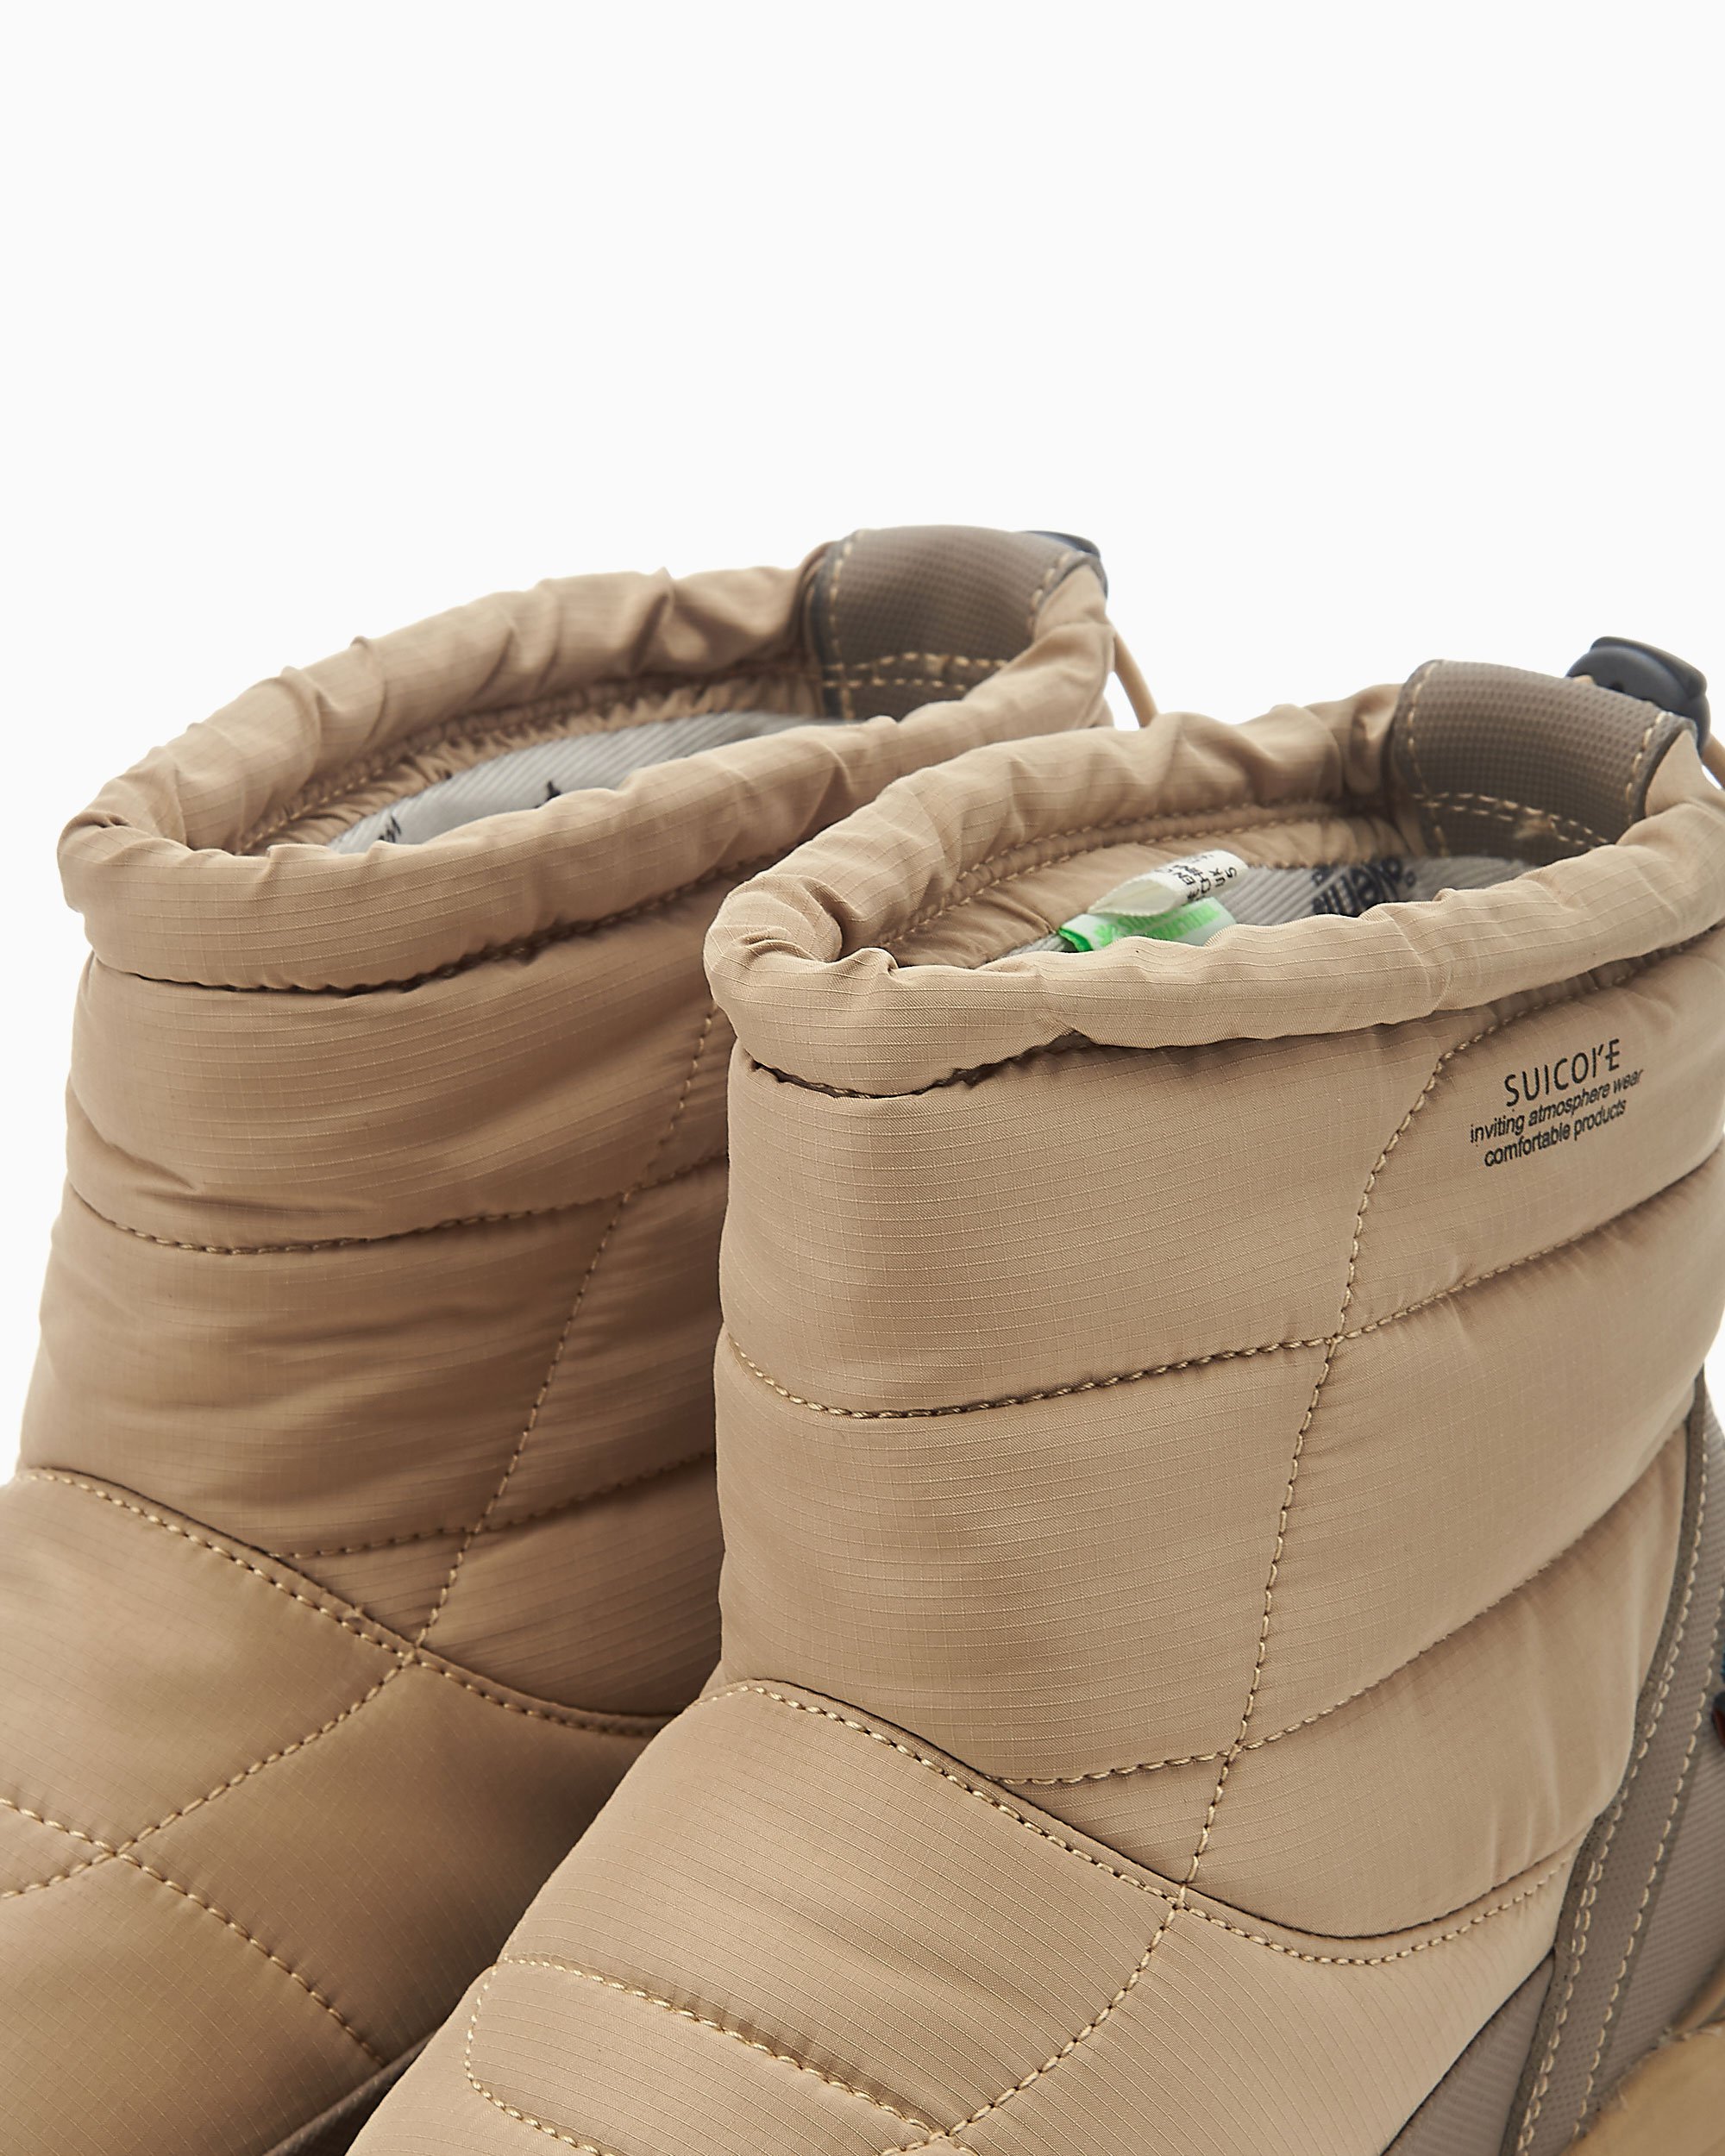 Suicoke Bower Evab Ankle-Boots Beige OG-222evab-BGE| FOOTDISTRICT